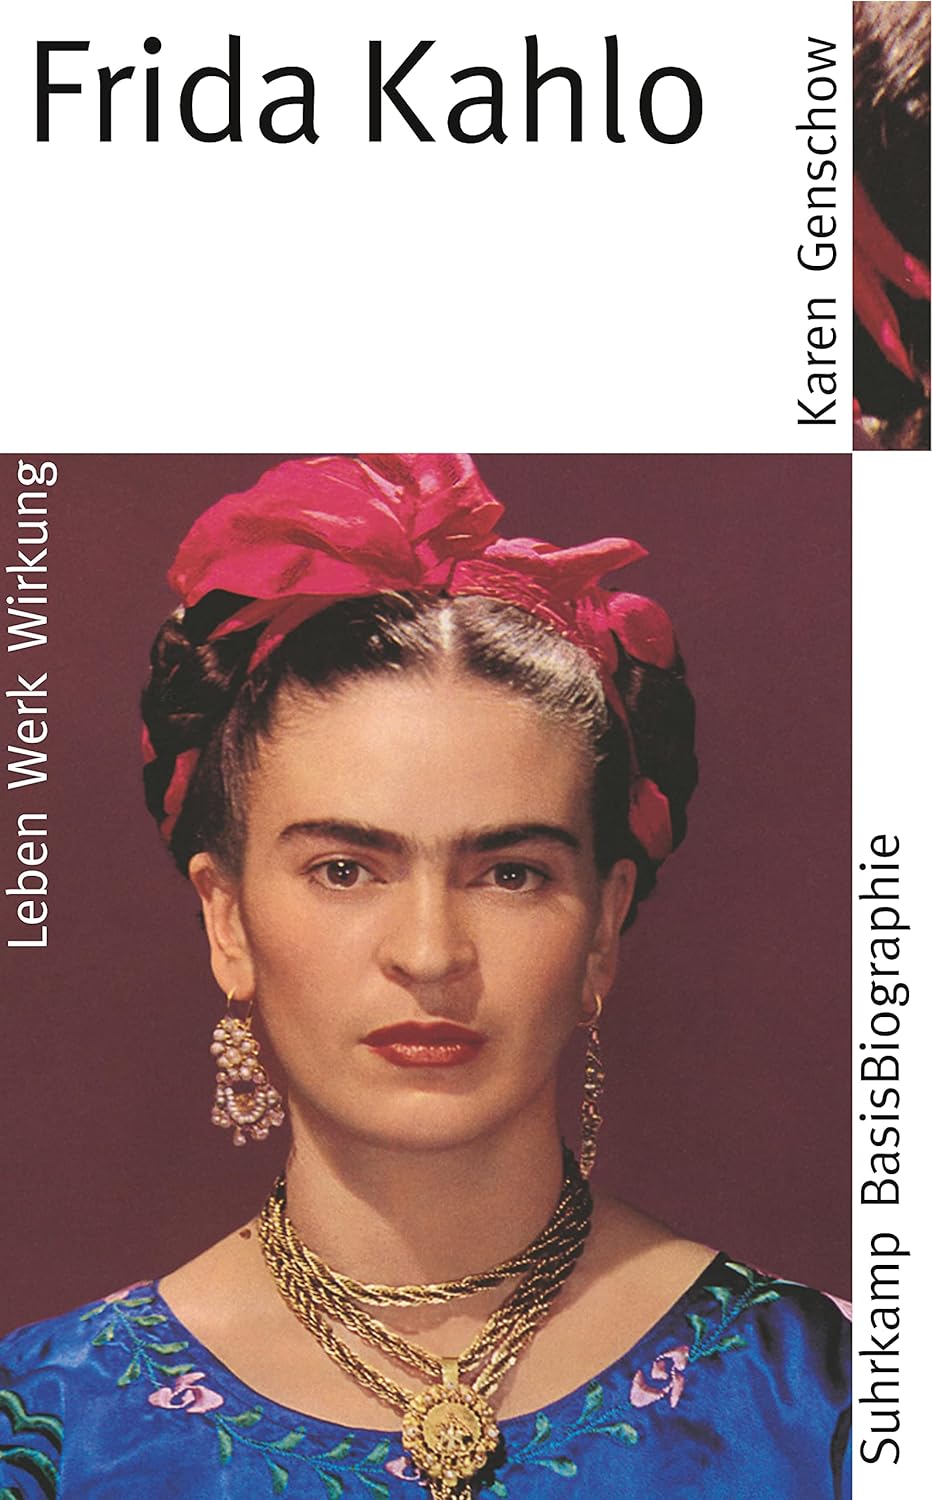 Frida Kahlo: Leben, Werk, Wirkung (Suhrkamp); als Taschenbuch erhältlich auf Amazon